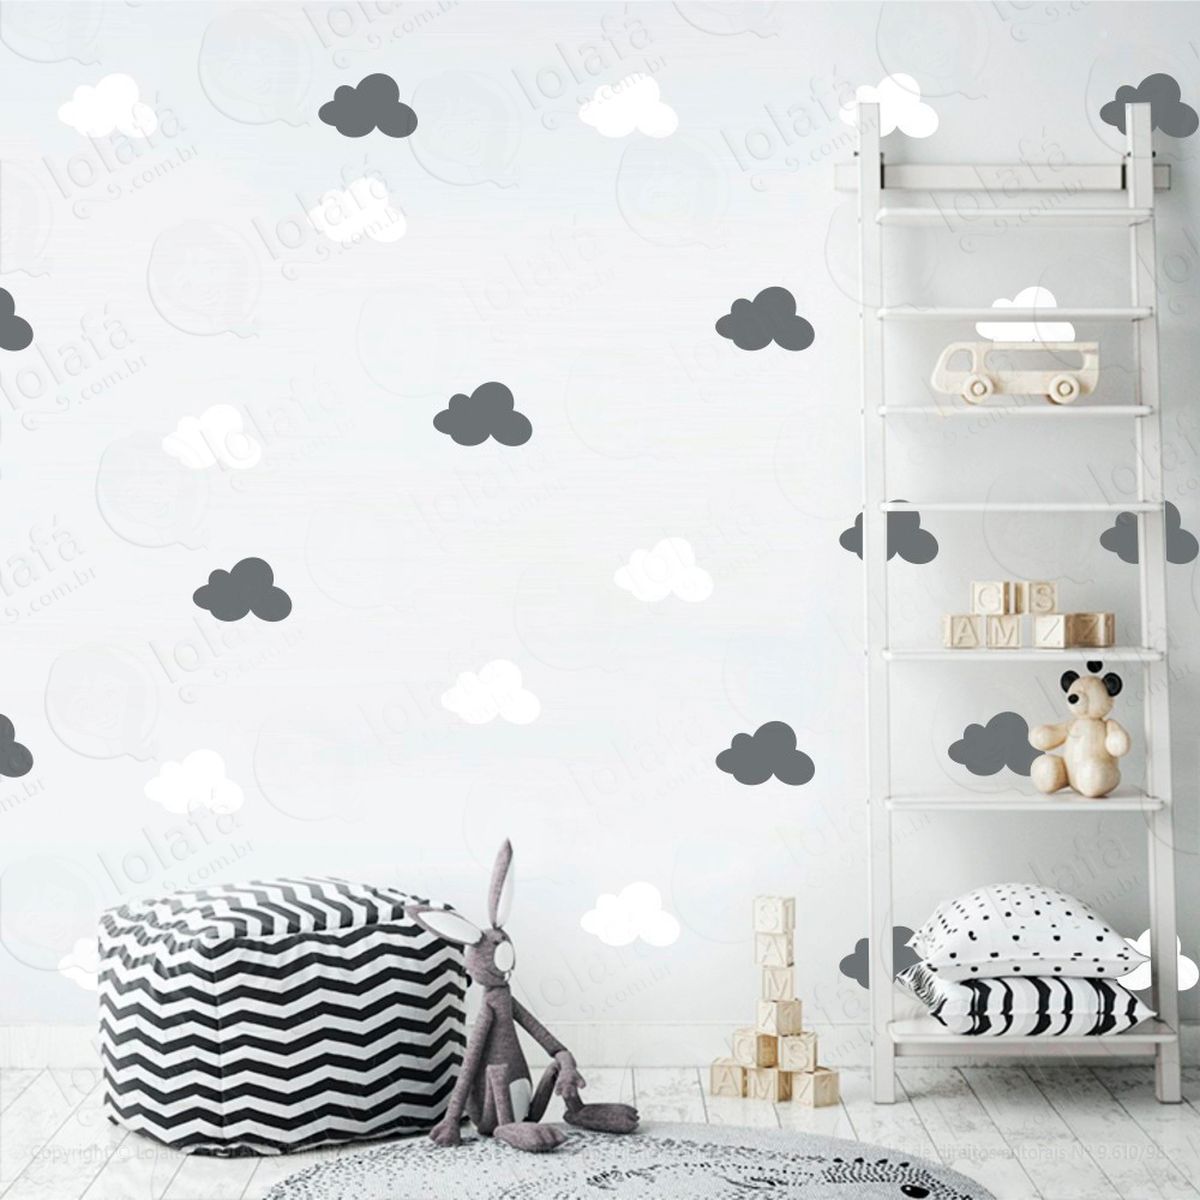 adesivos nuvens 36 peças adesivos para quarto de bebê infantil - mod:496